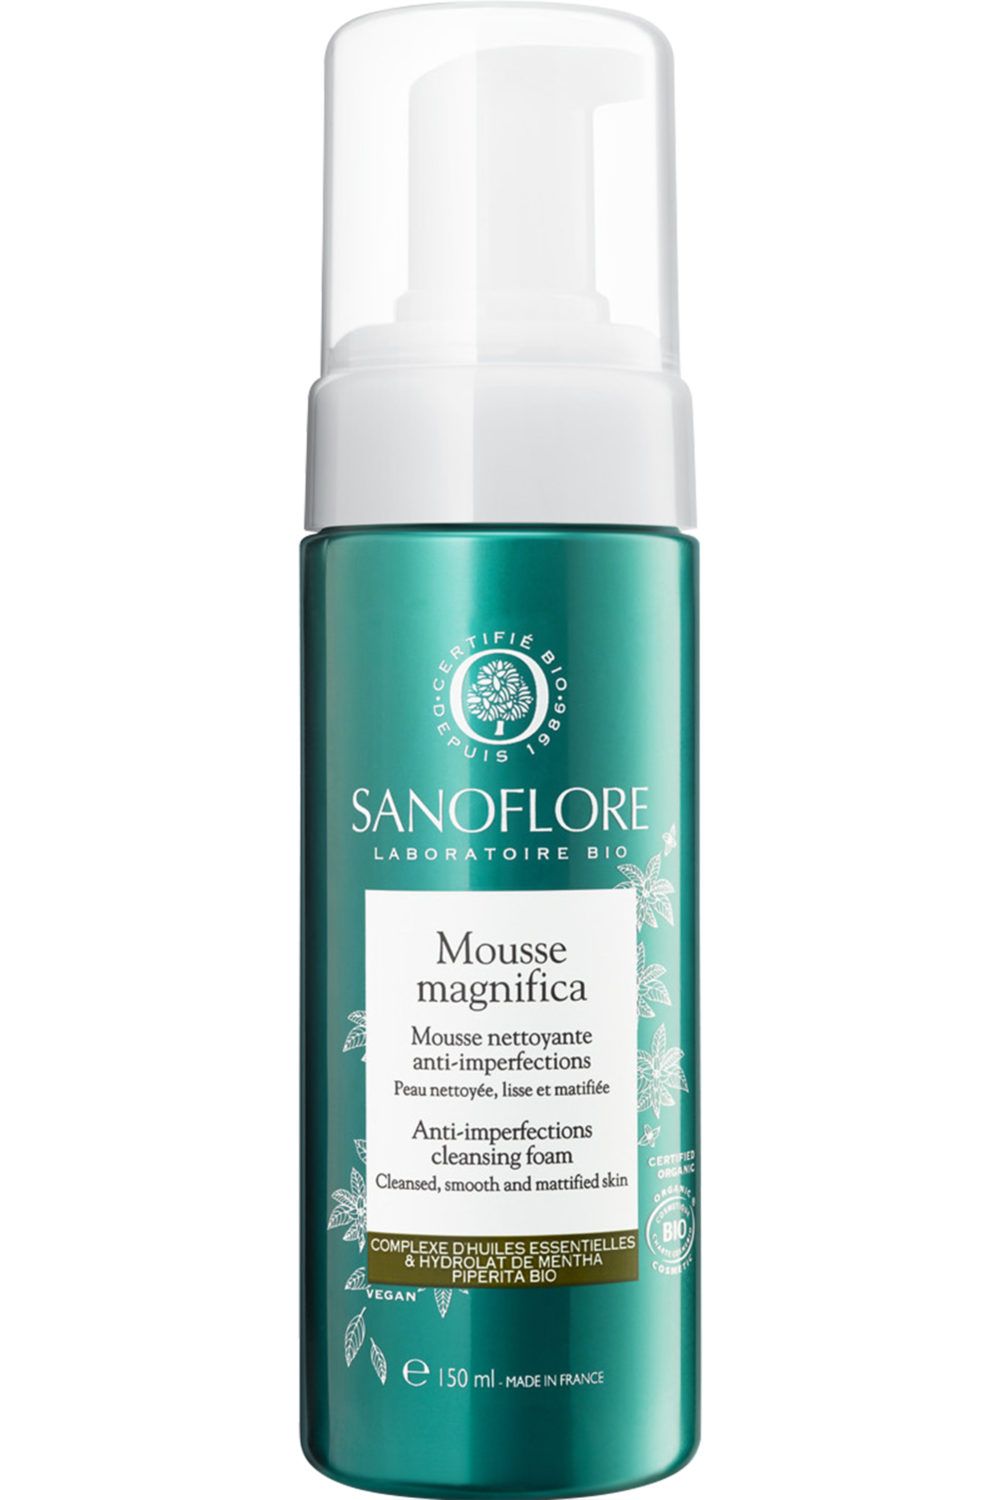 Sanoflore - Mousse visage nettoyante purifiante Bio Aqua Magnifica 150mL